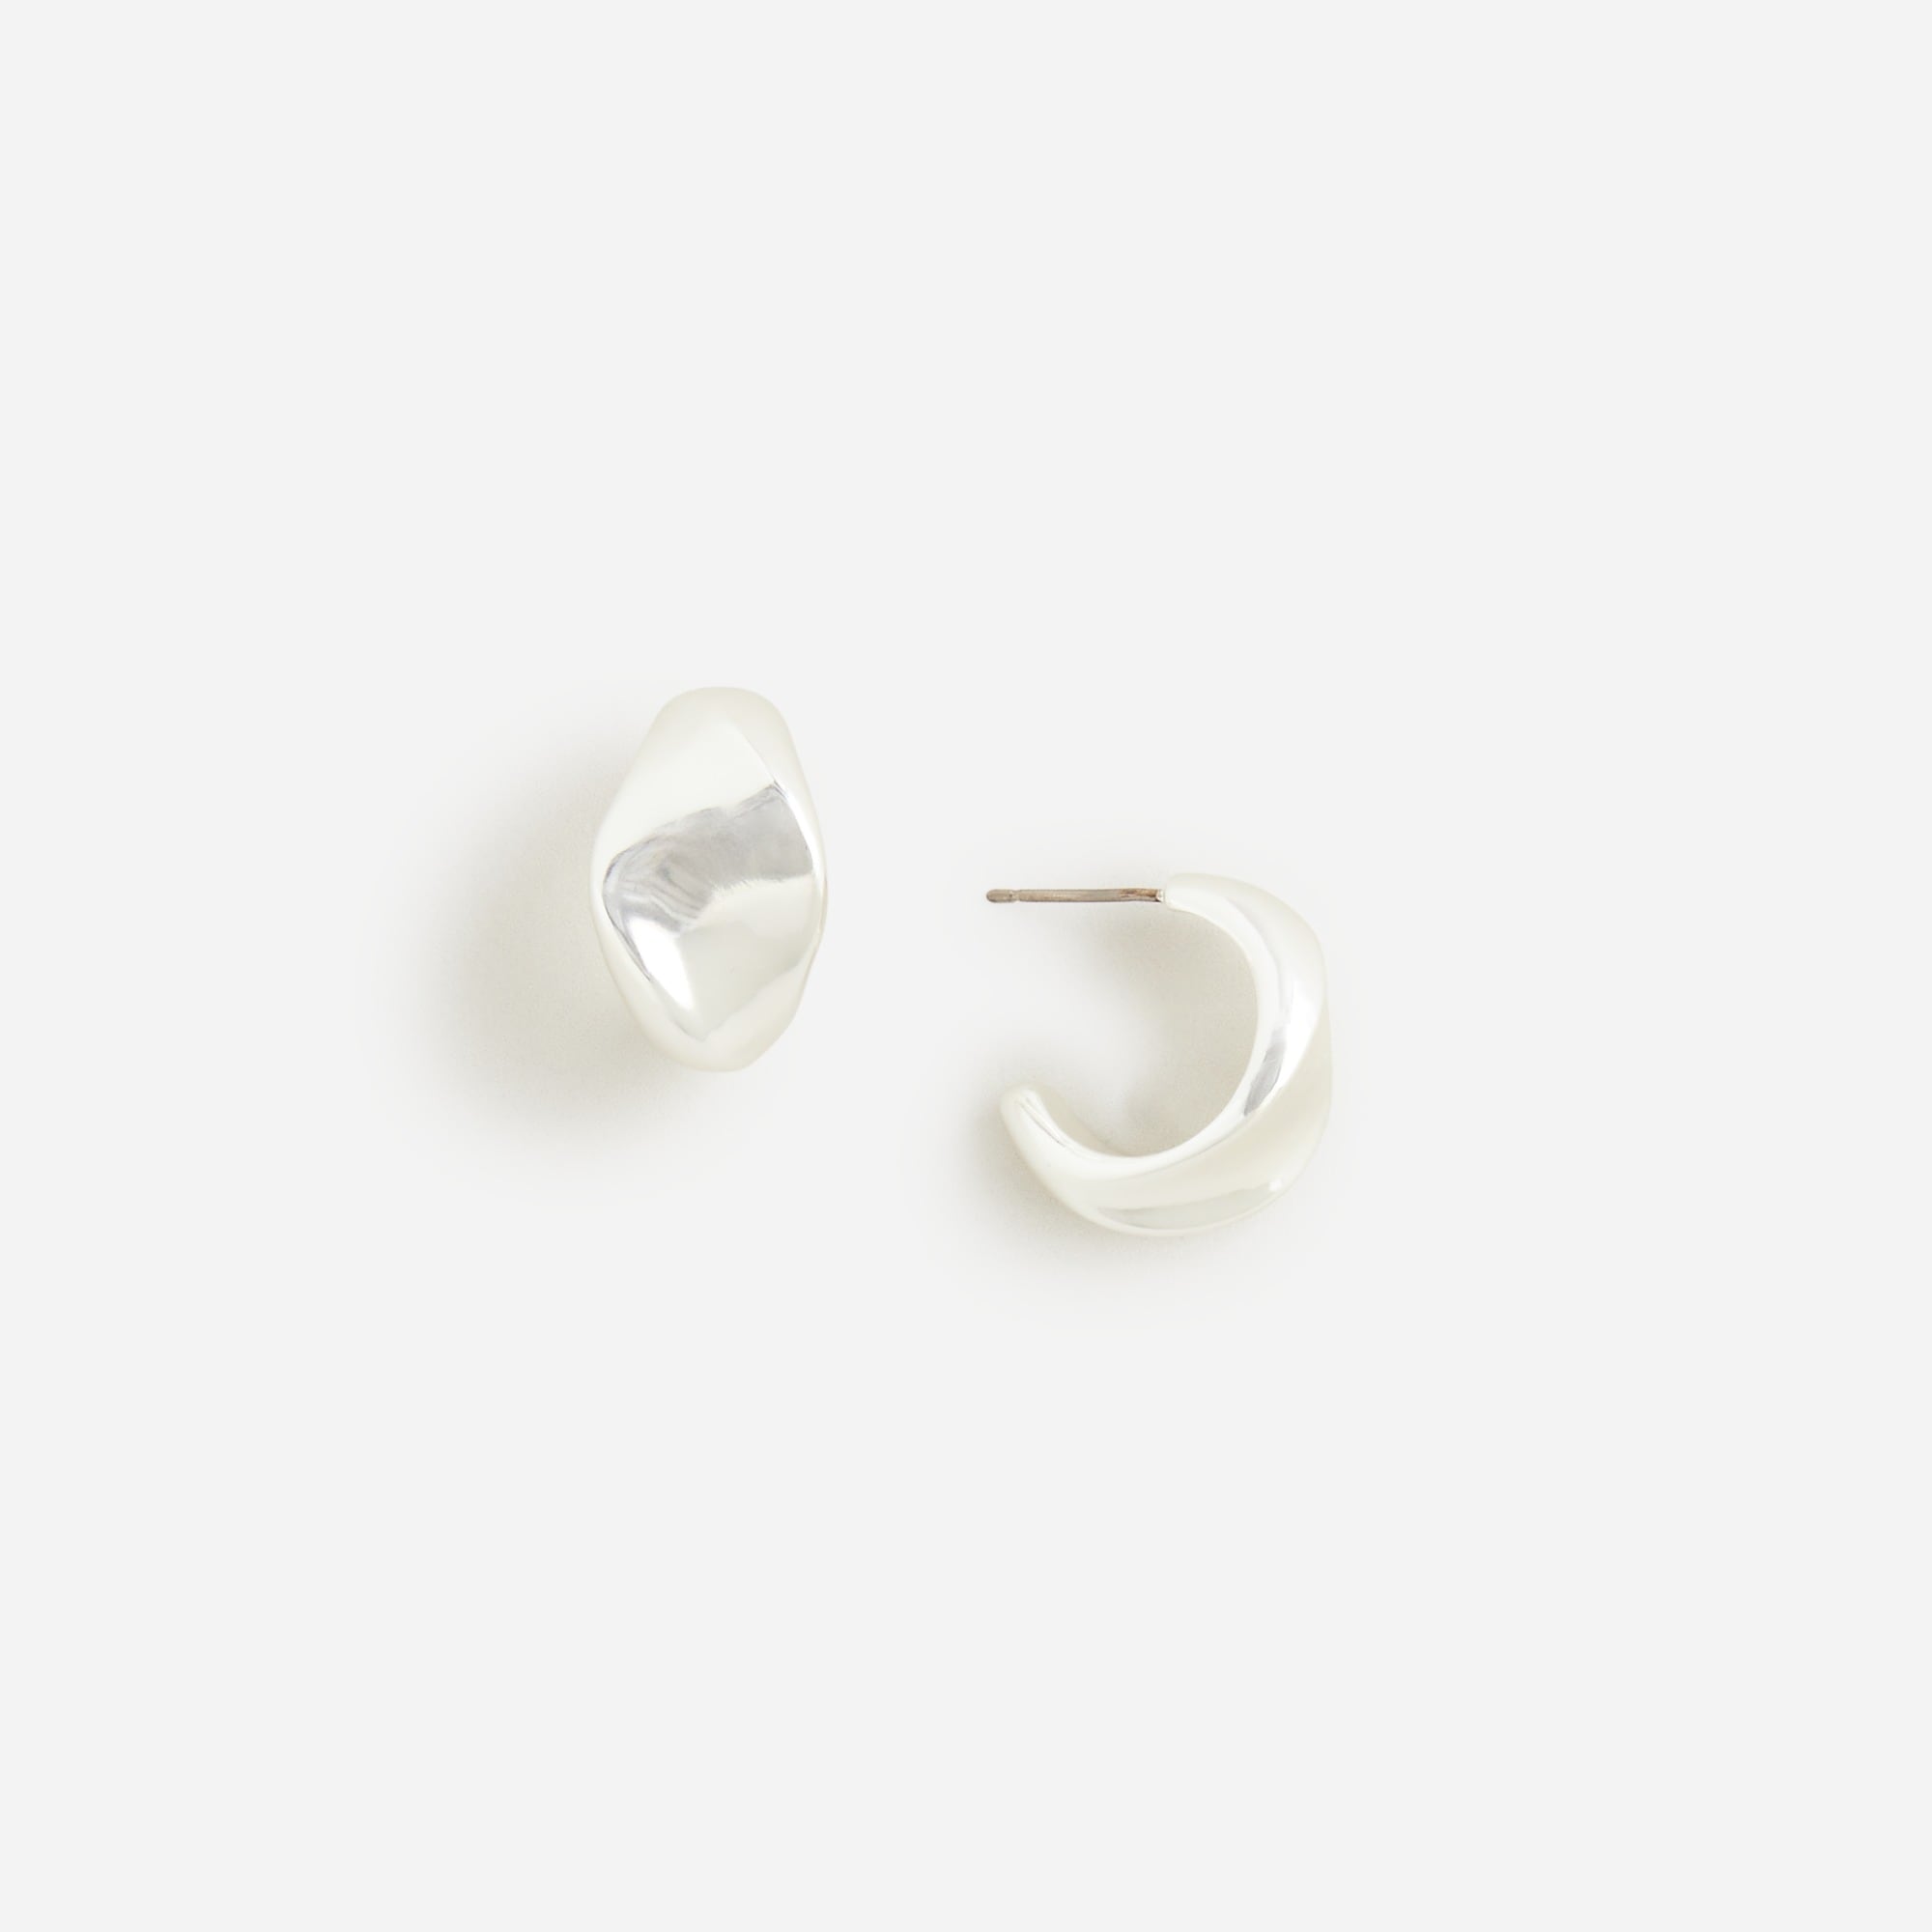  Pre-order Curved hoop earrings